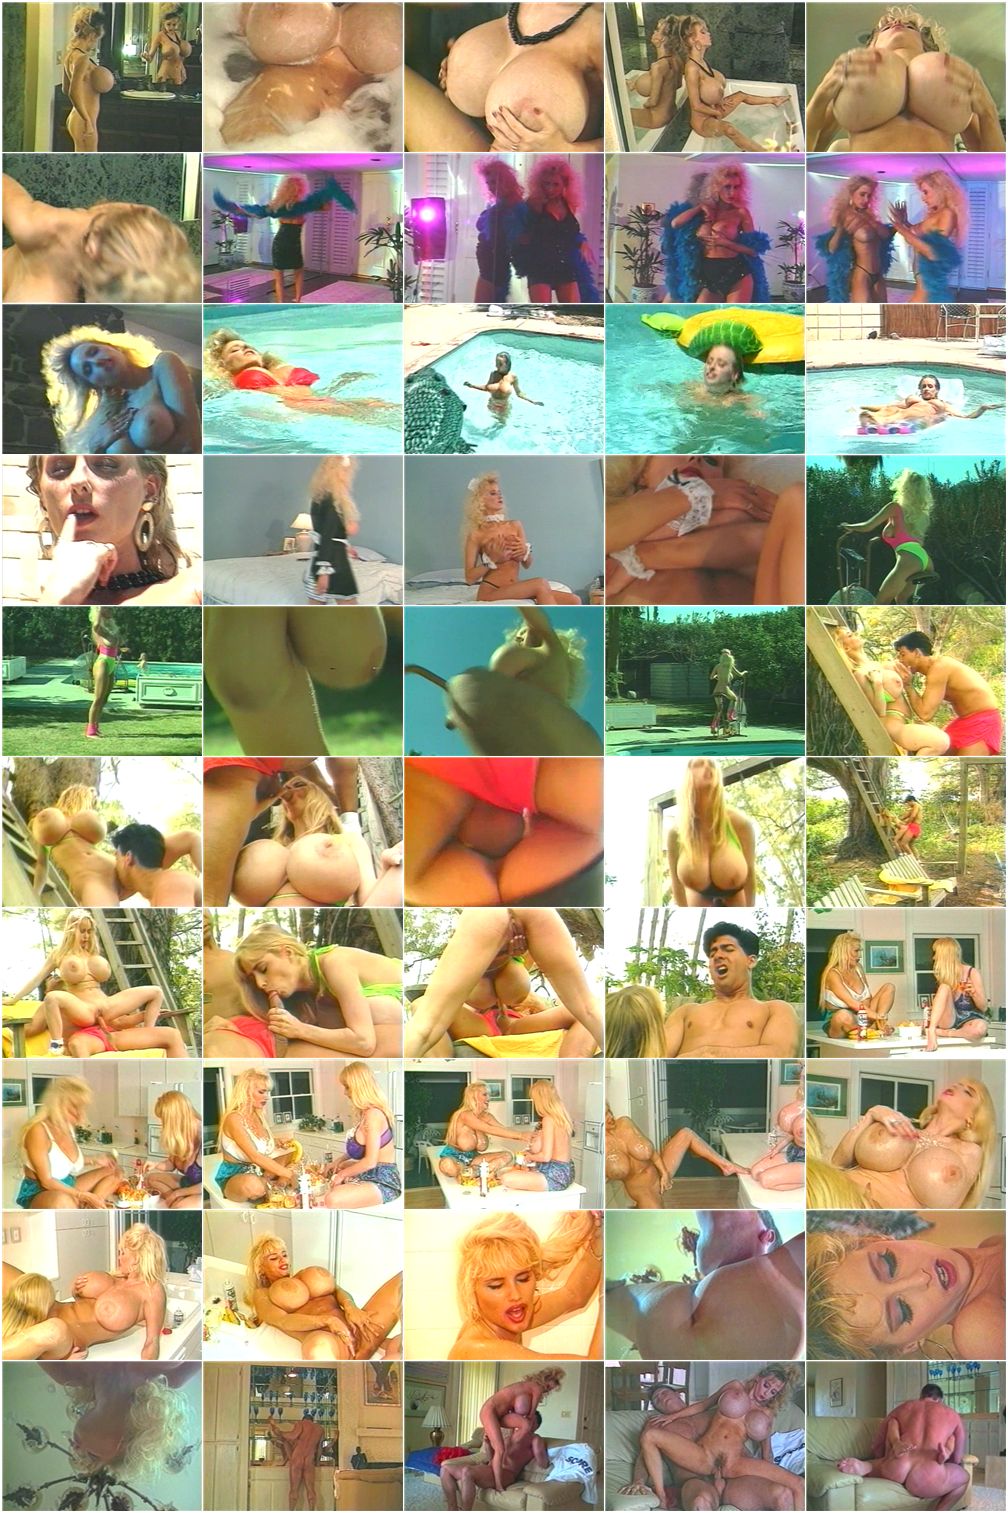 Грудастые завоевания Венди /Busty Conquests Of Wendy Whoppers/ Big Top Video (2006) скриншоты из порно фильма